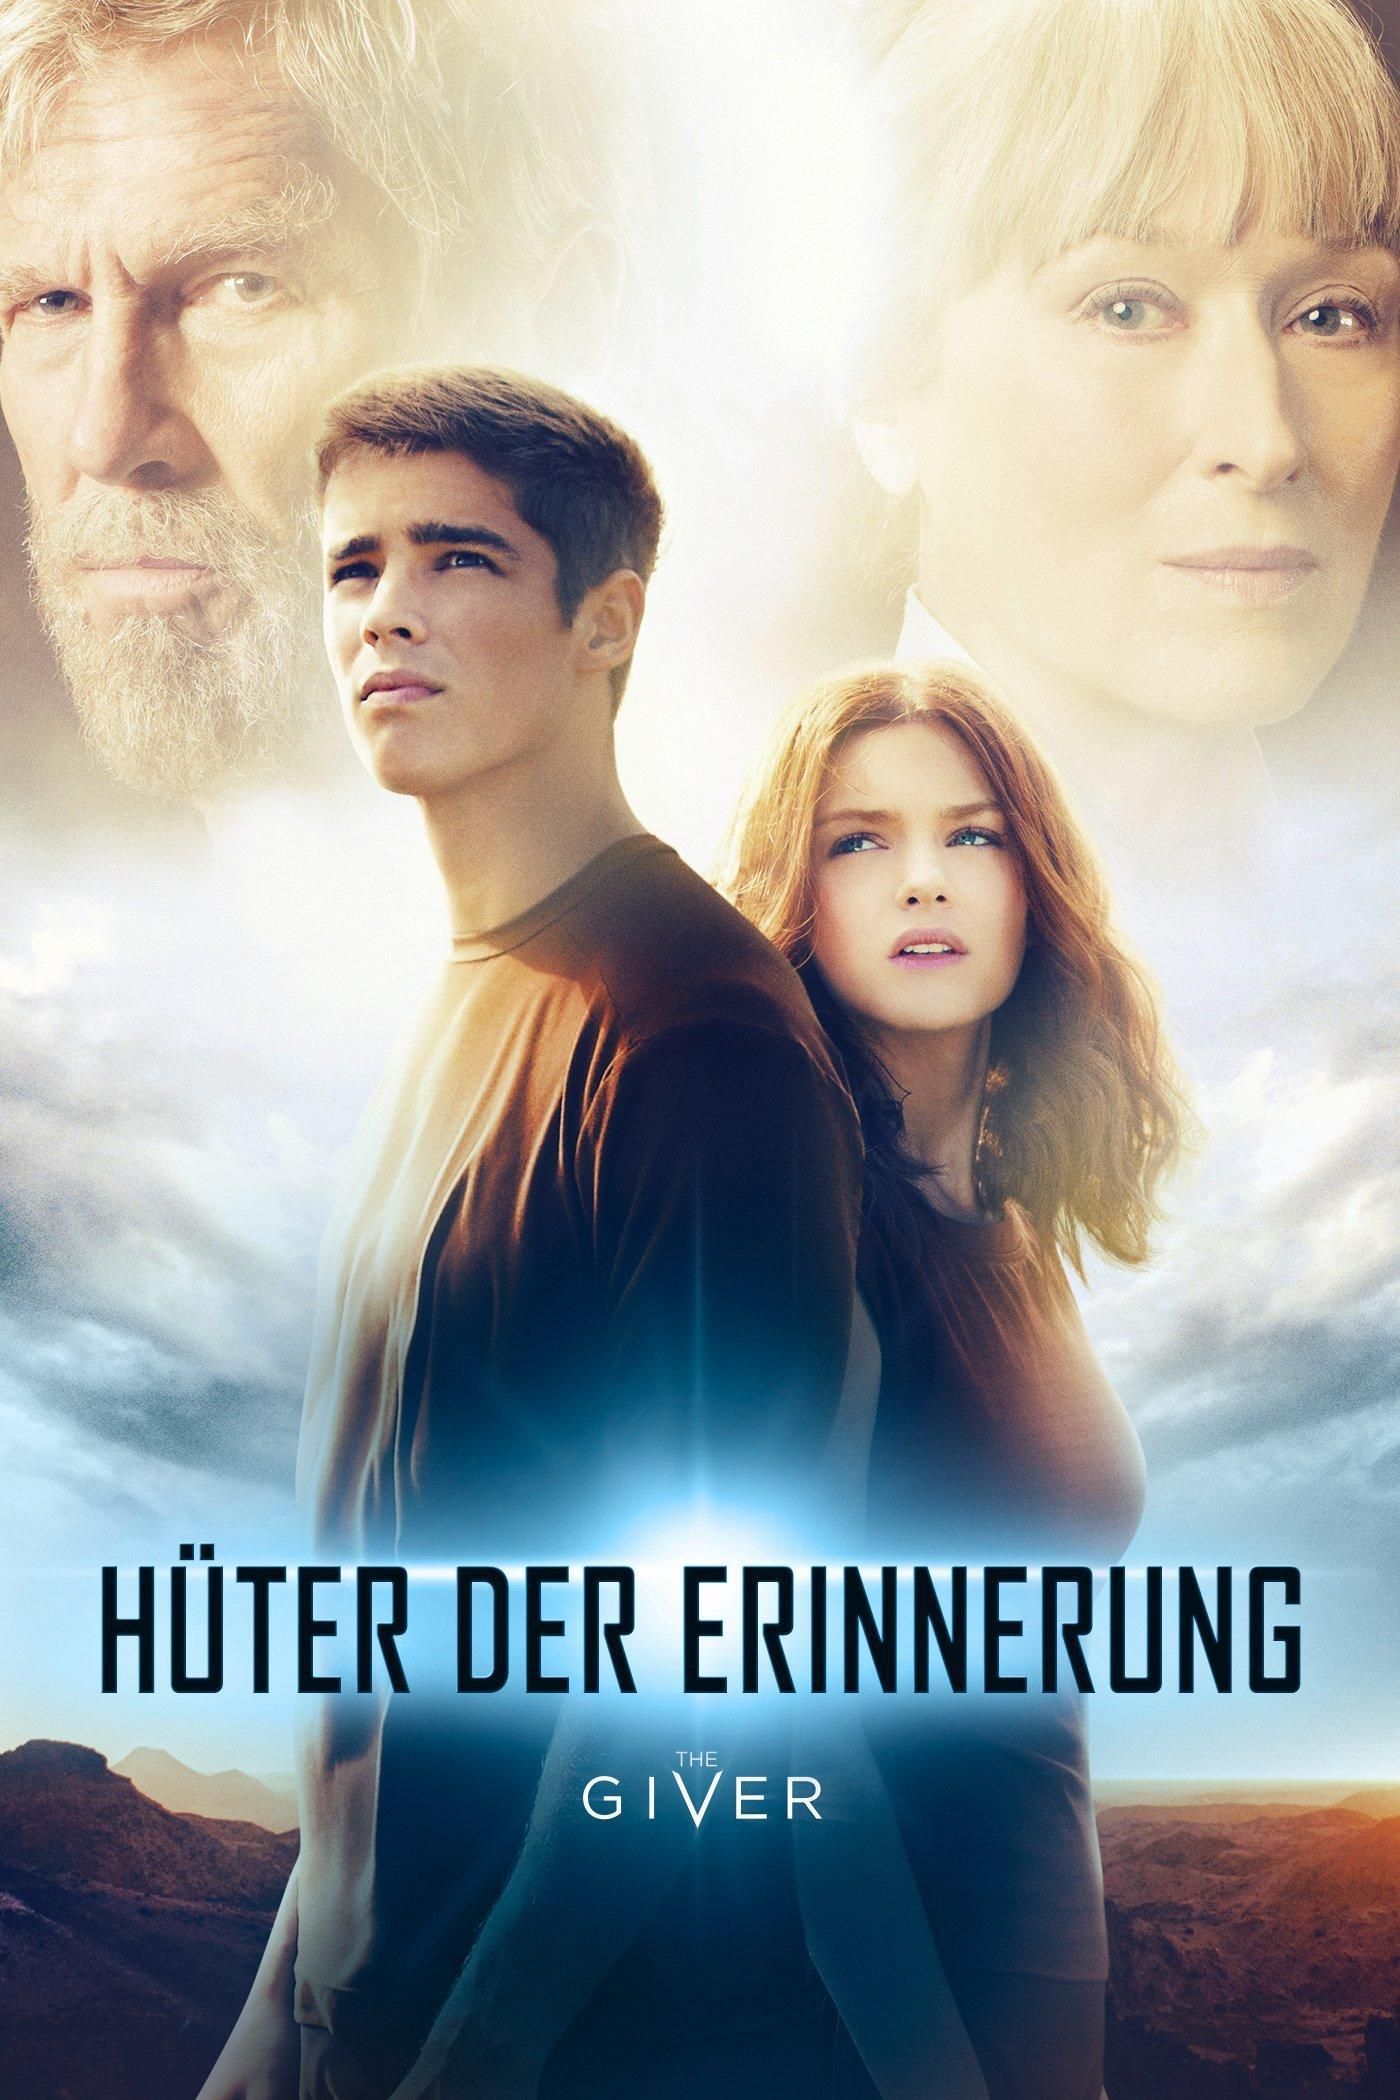 Hüter der Erinnerung - The Giver (2014) Film-information und Trailer